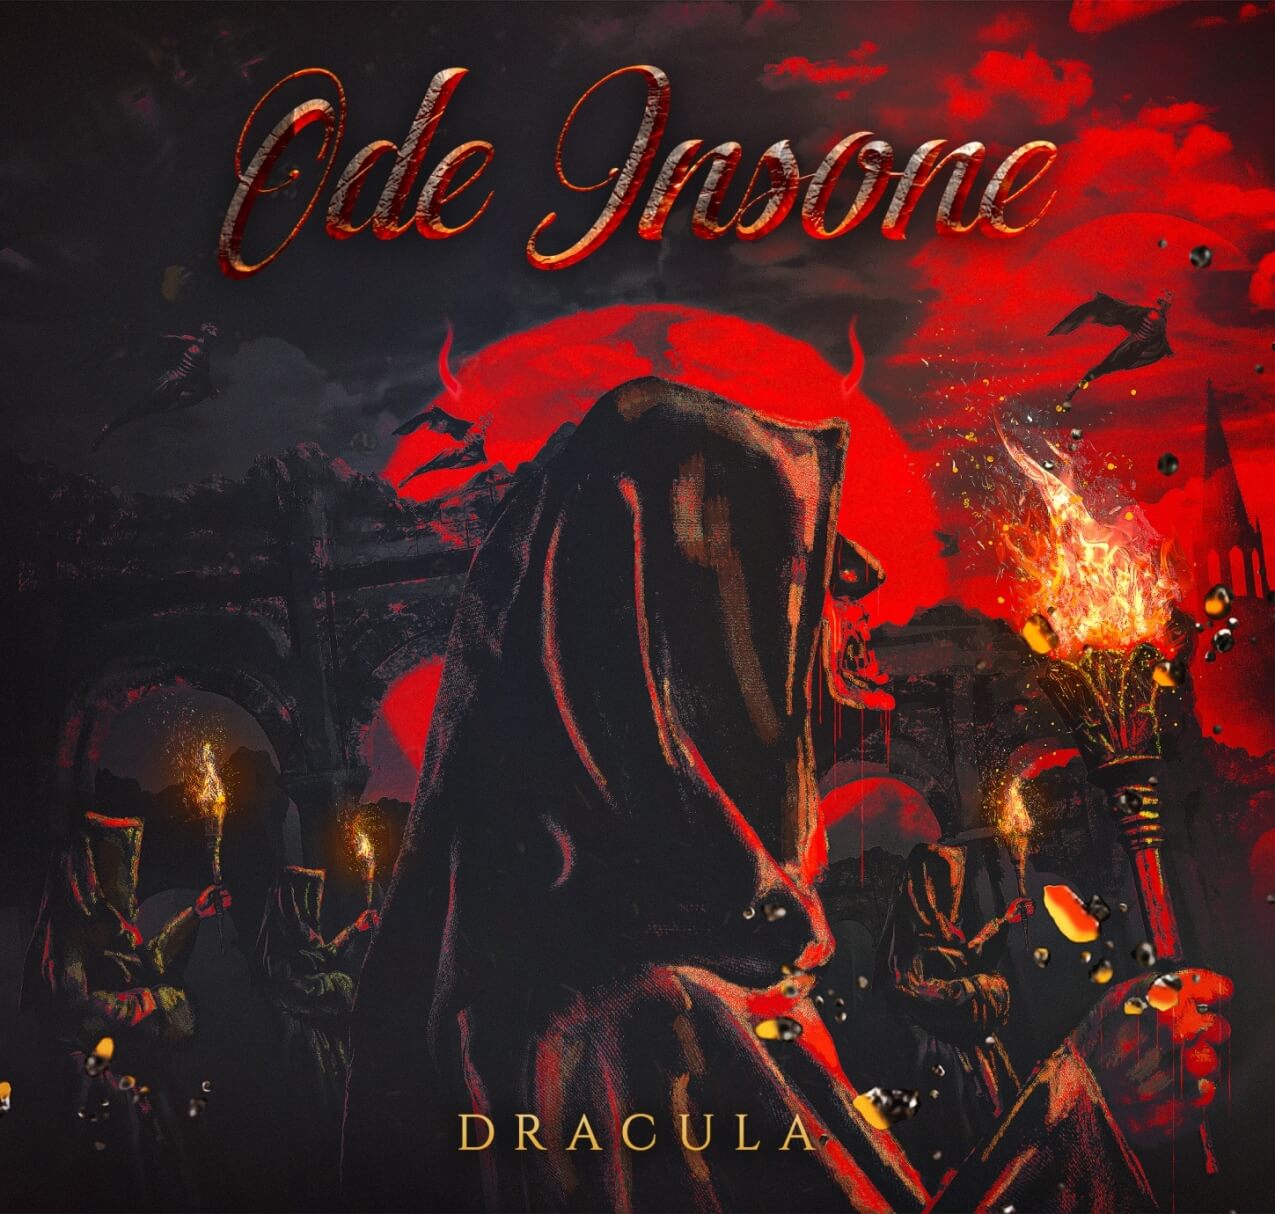 Dracula - novo EP do ODE INSONE